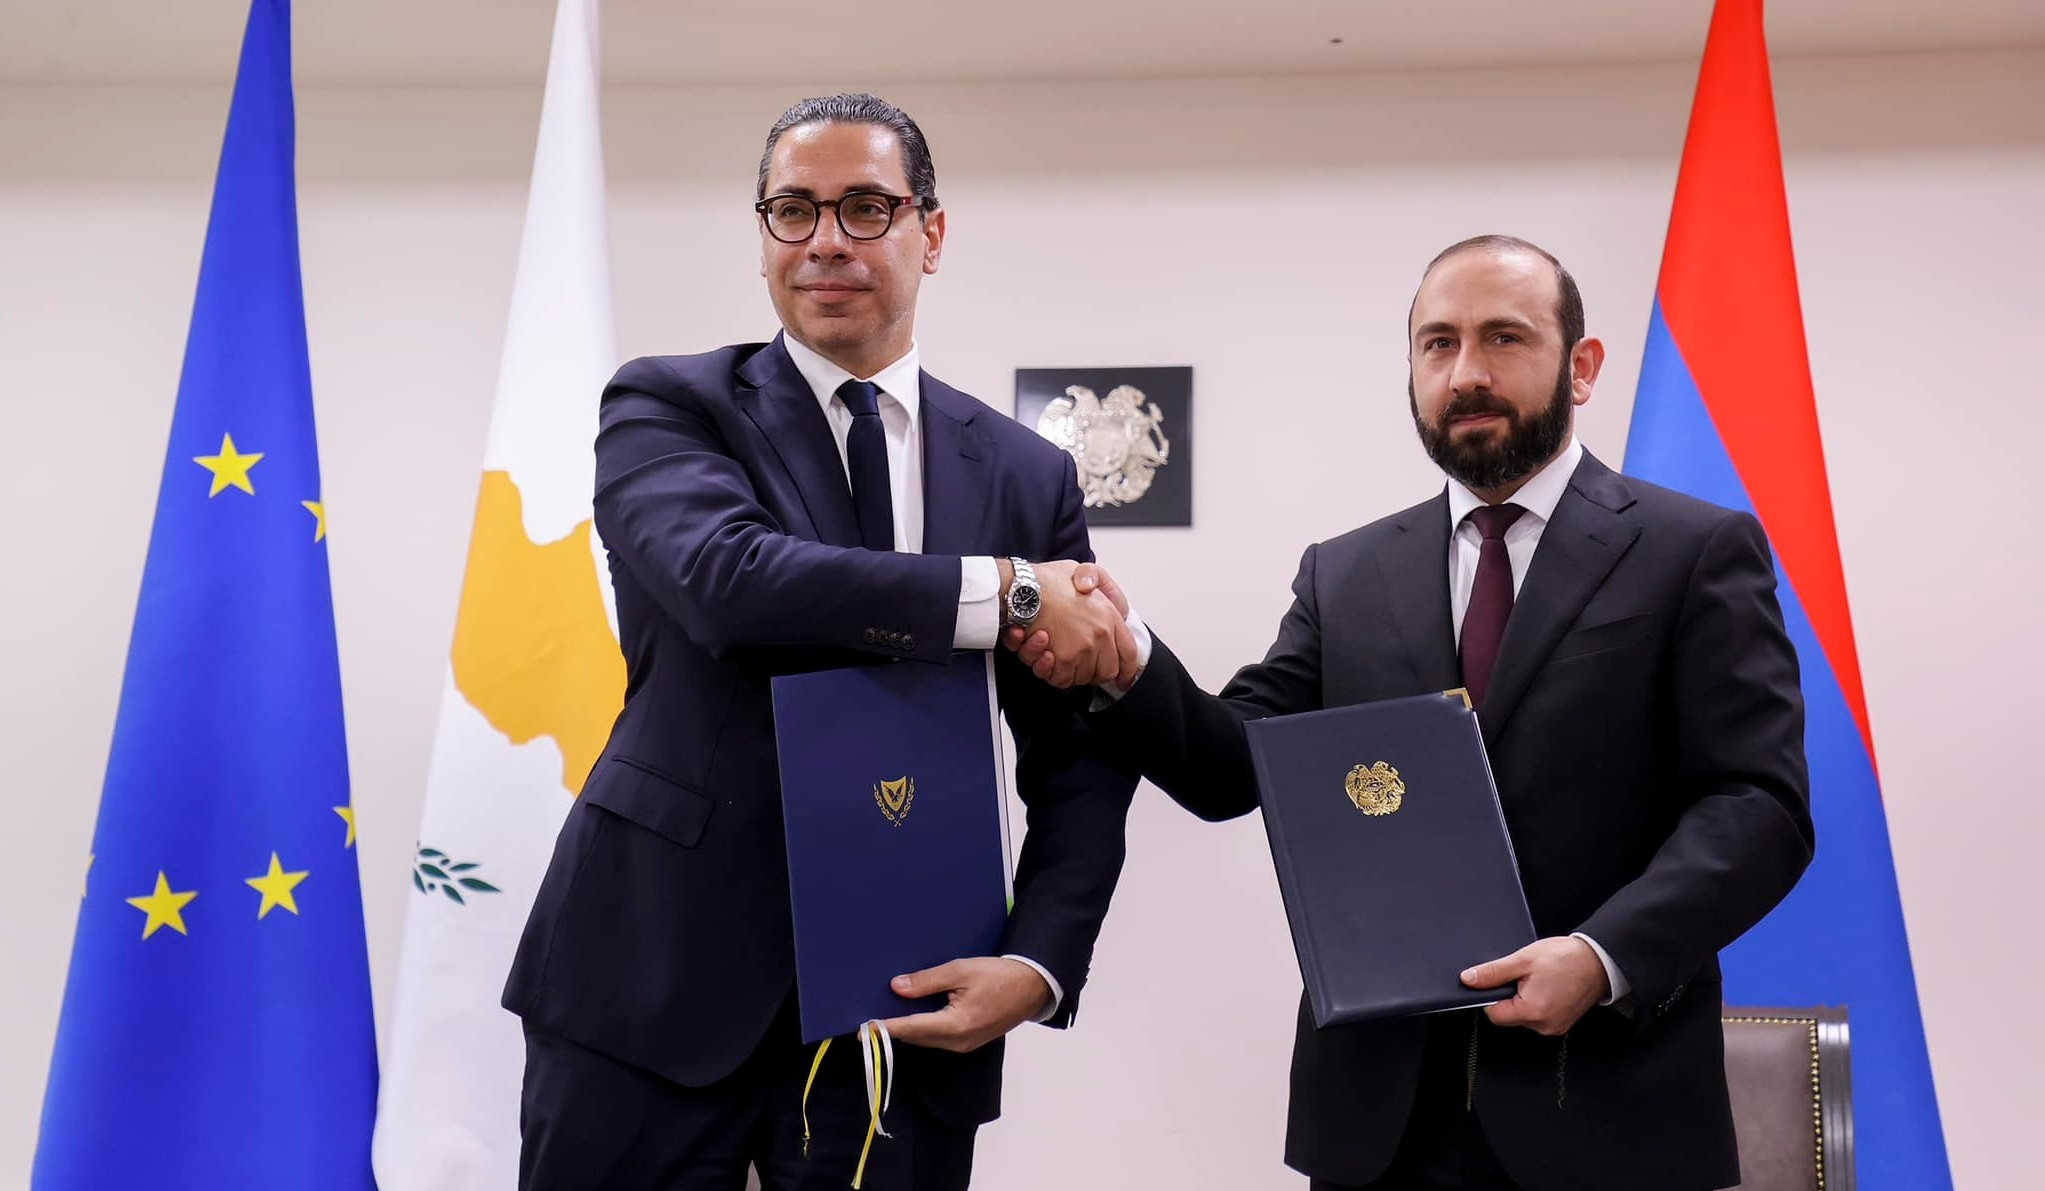 Հայաստանի և Կիպրոսի ԱԳ նախարարությունների միջև փոխըմբռնման հուշագիր է ստորագրվել